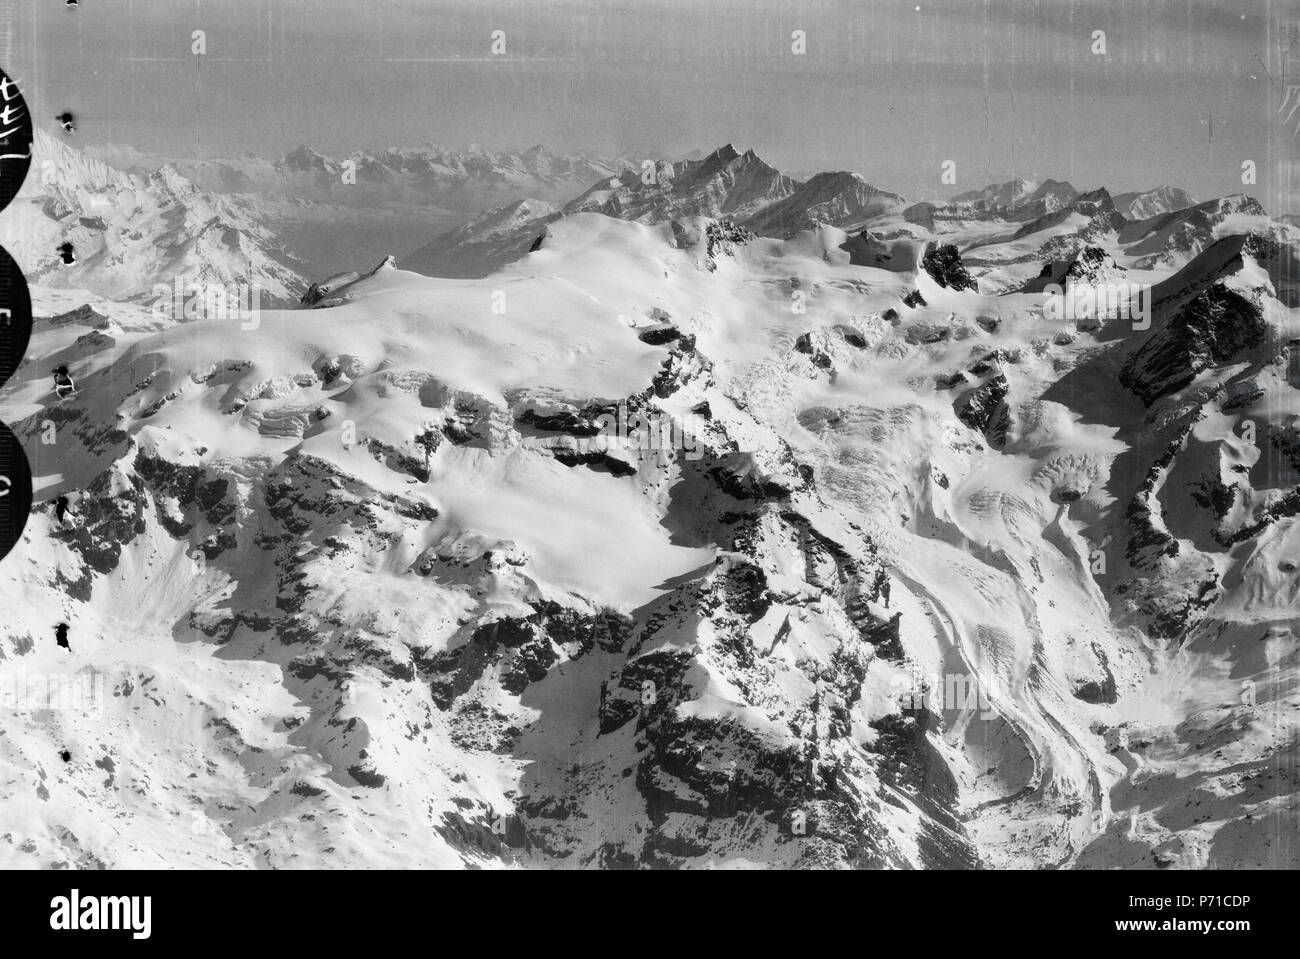 50 ETH-BIB-Breithorn - Castor - Mischabelhörner von S. aus 4800 m Höhe-Mittelmeerflug 1928-LBS MH02-05-0144 Stock Photo